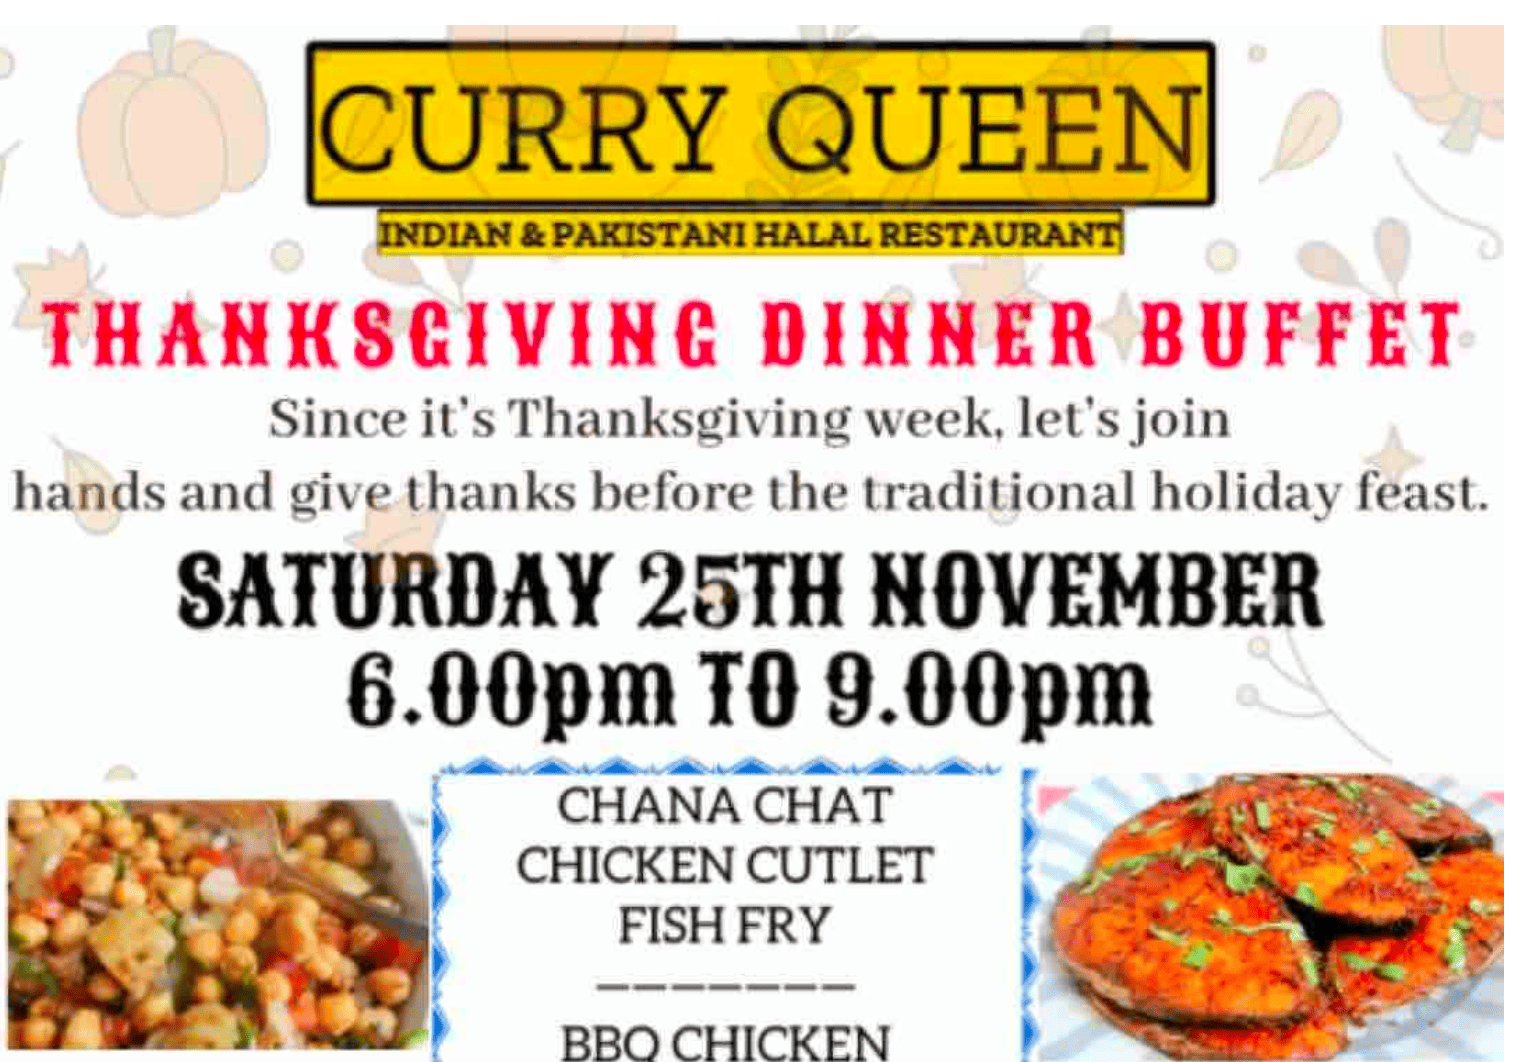 2023 Curry Queen Thanksgiving Dinner Buffet